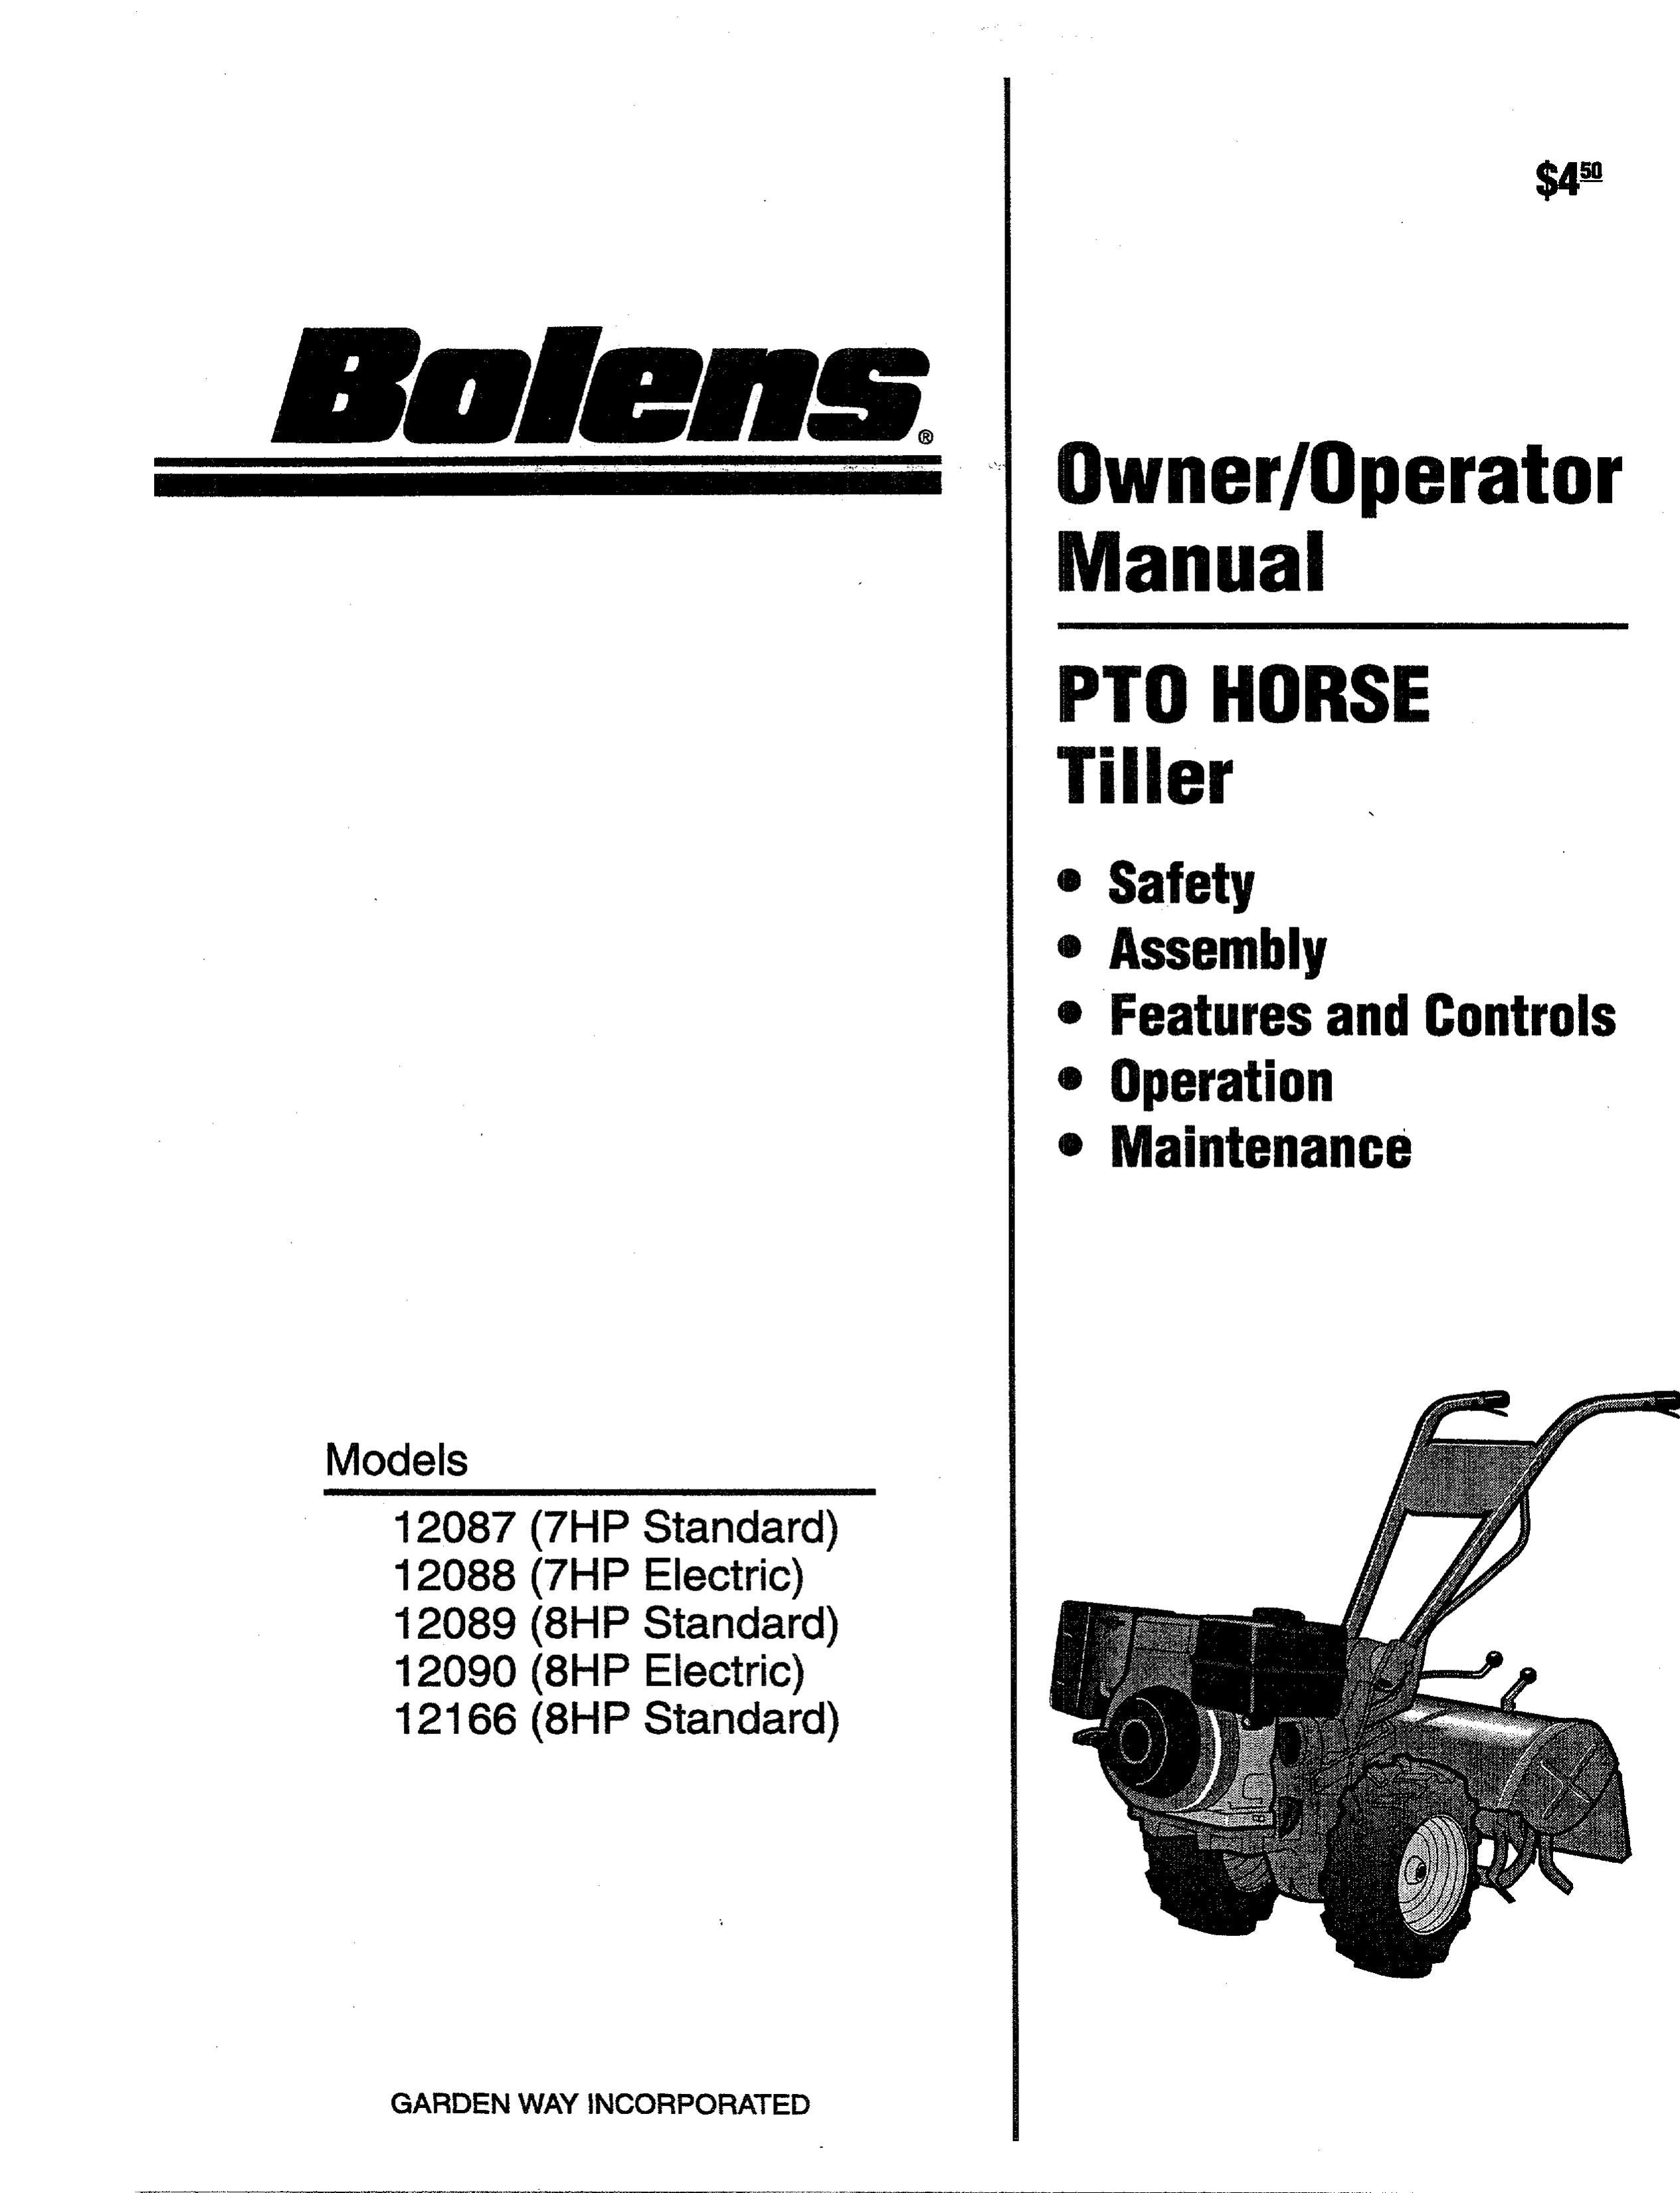 Bolens 12166-8HP Tiller User Manual